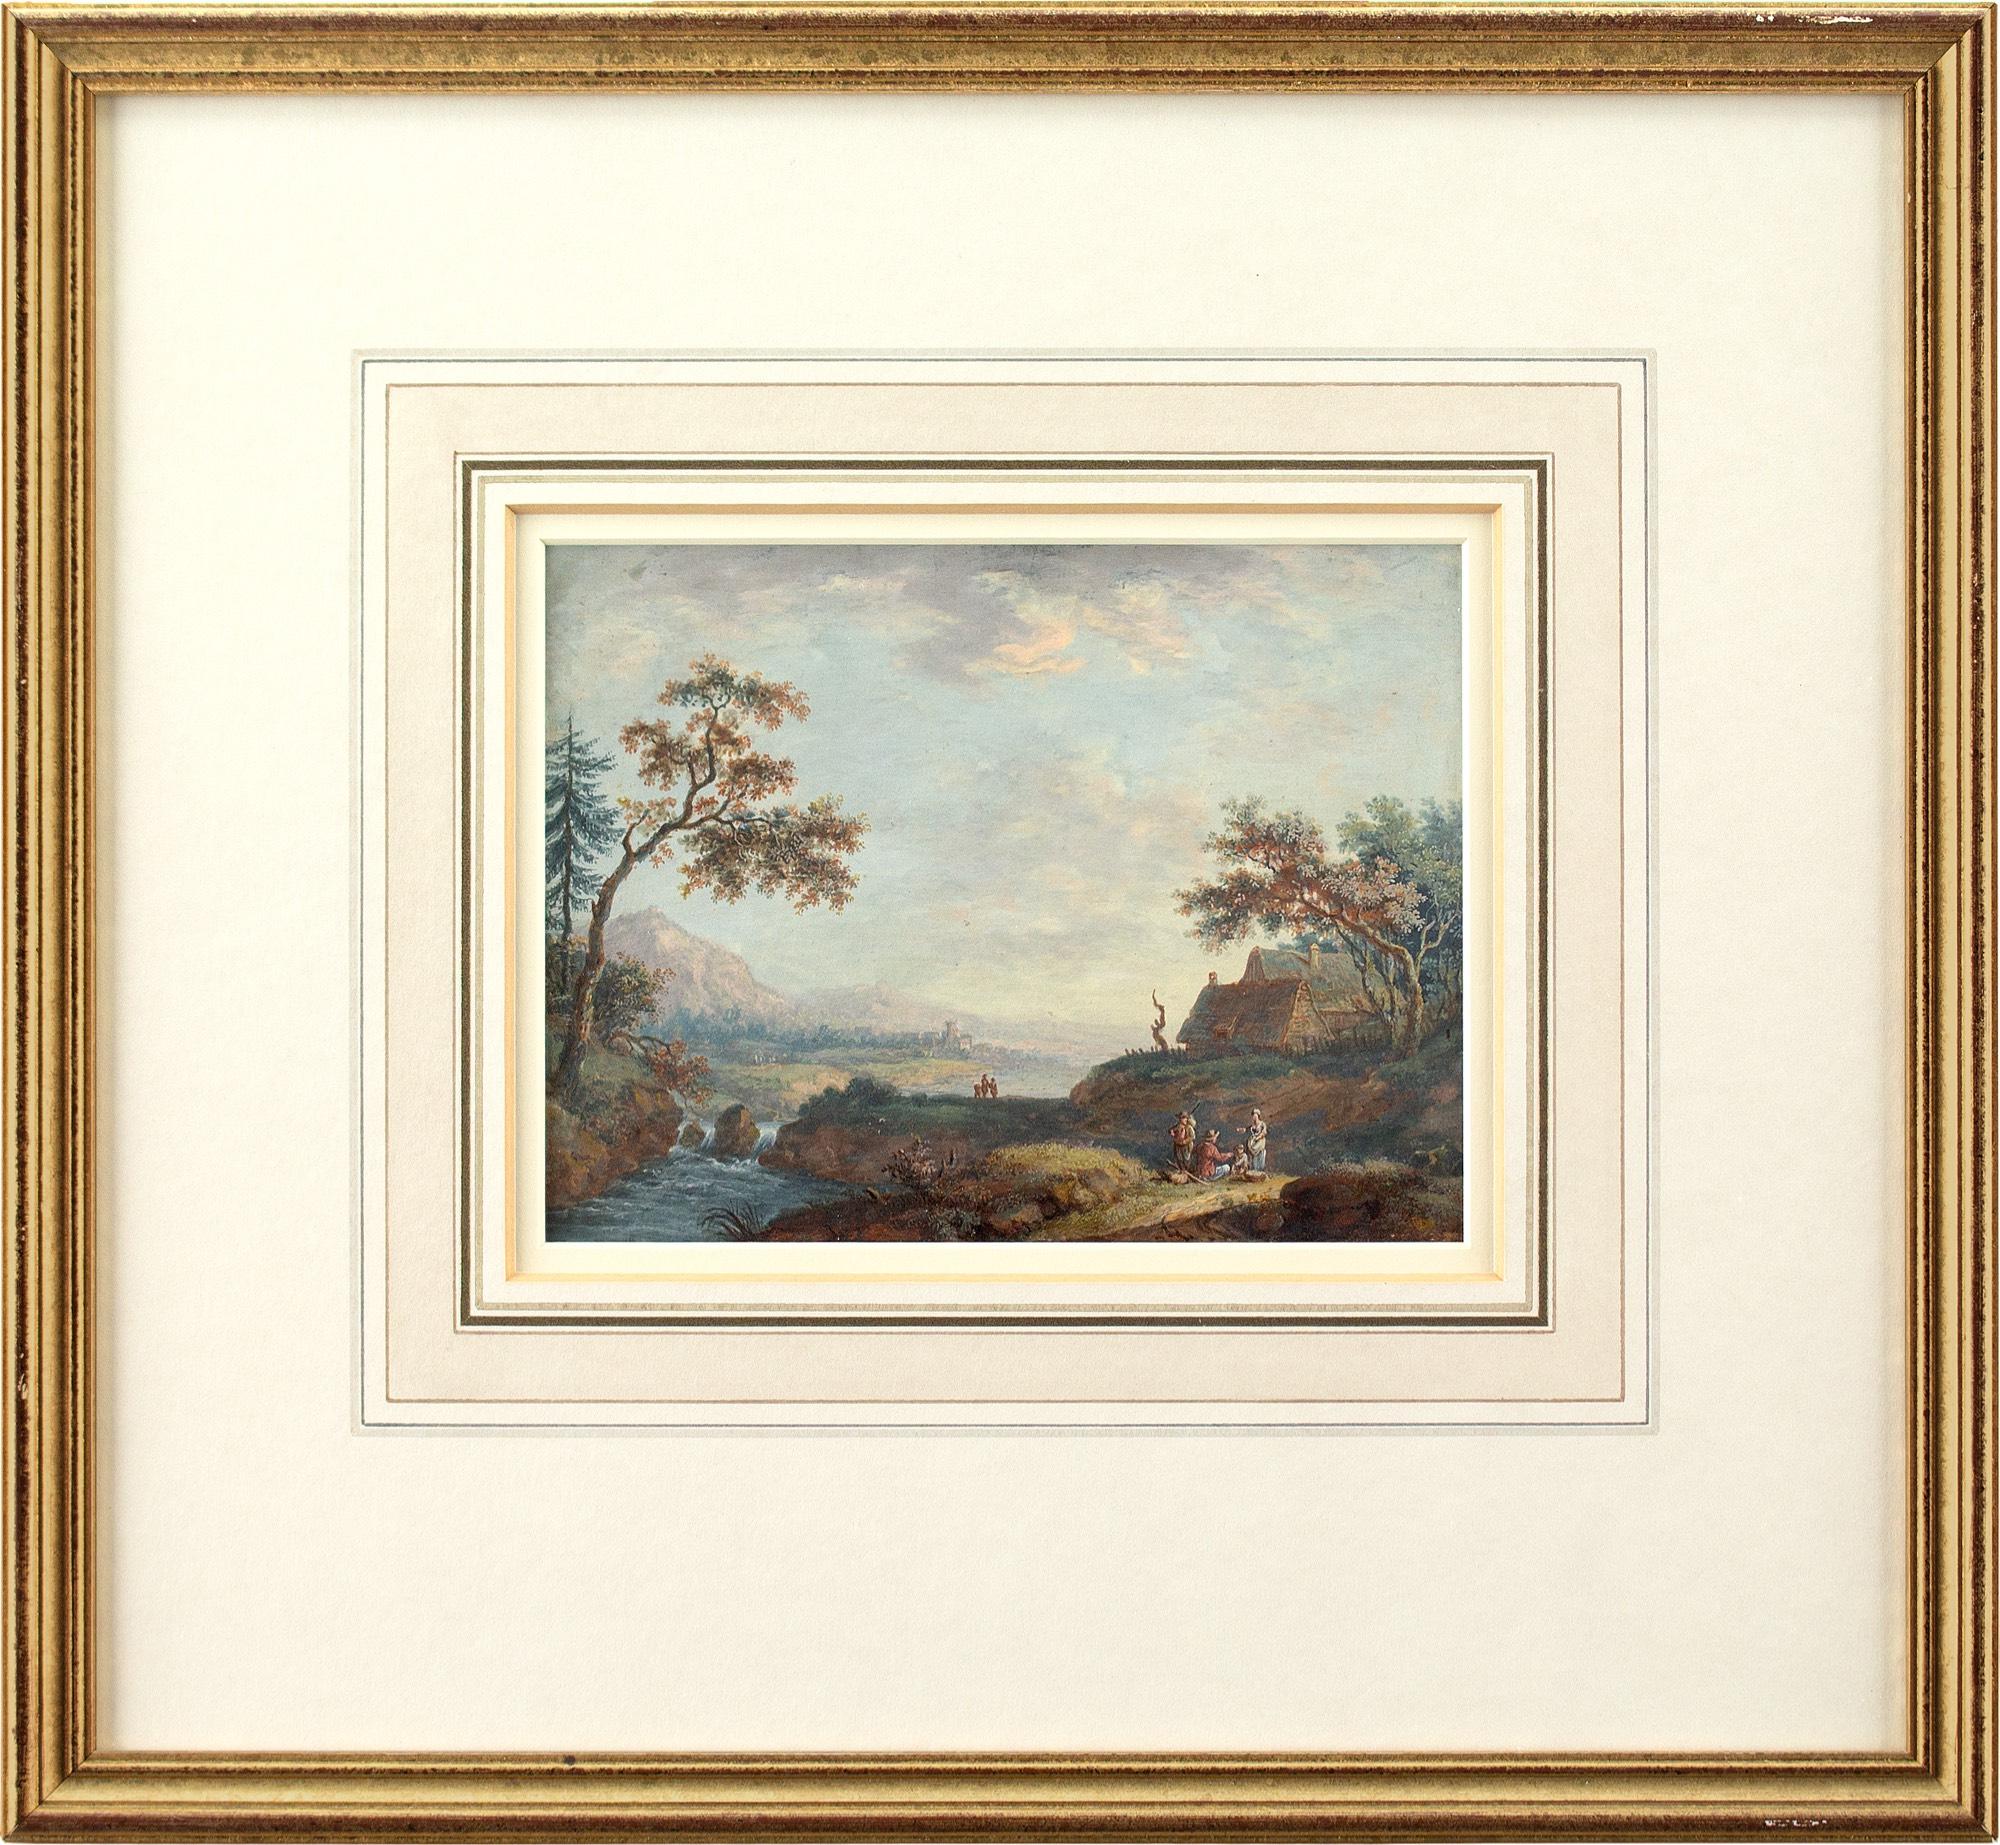 Diese Gouache des britischen Künstlers John Inigo Richards RA (1731-1810) aus dem späten 18. Jahrhundert zeigt eine malerische Landschaft mit Weg, Figuren und entfernten Häusern.

Inigo Richards suchte inmitten der lärmenden Dramatik der Londoner